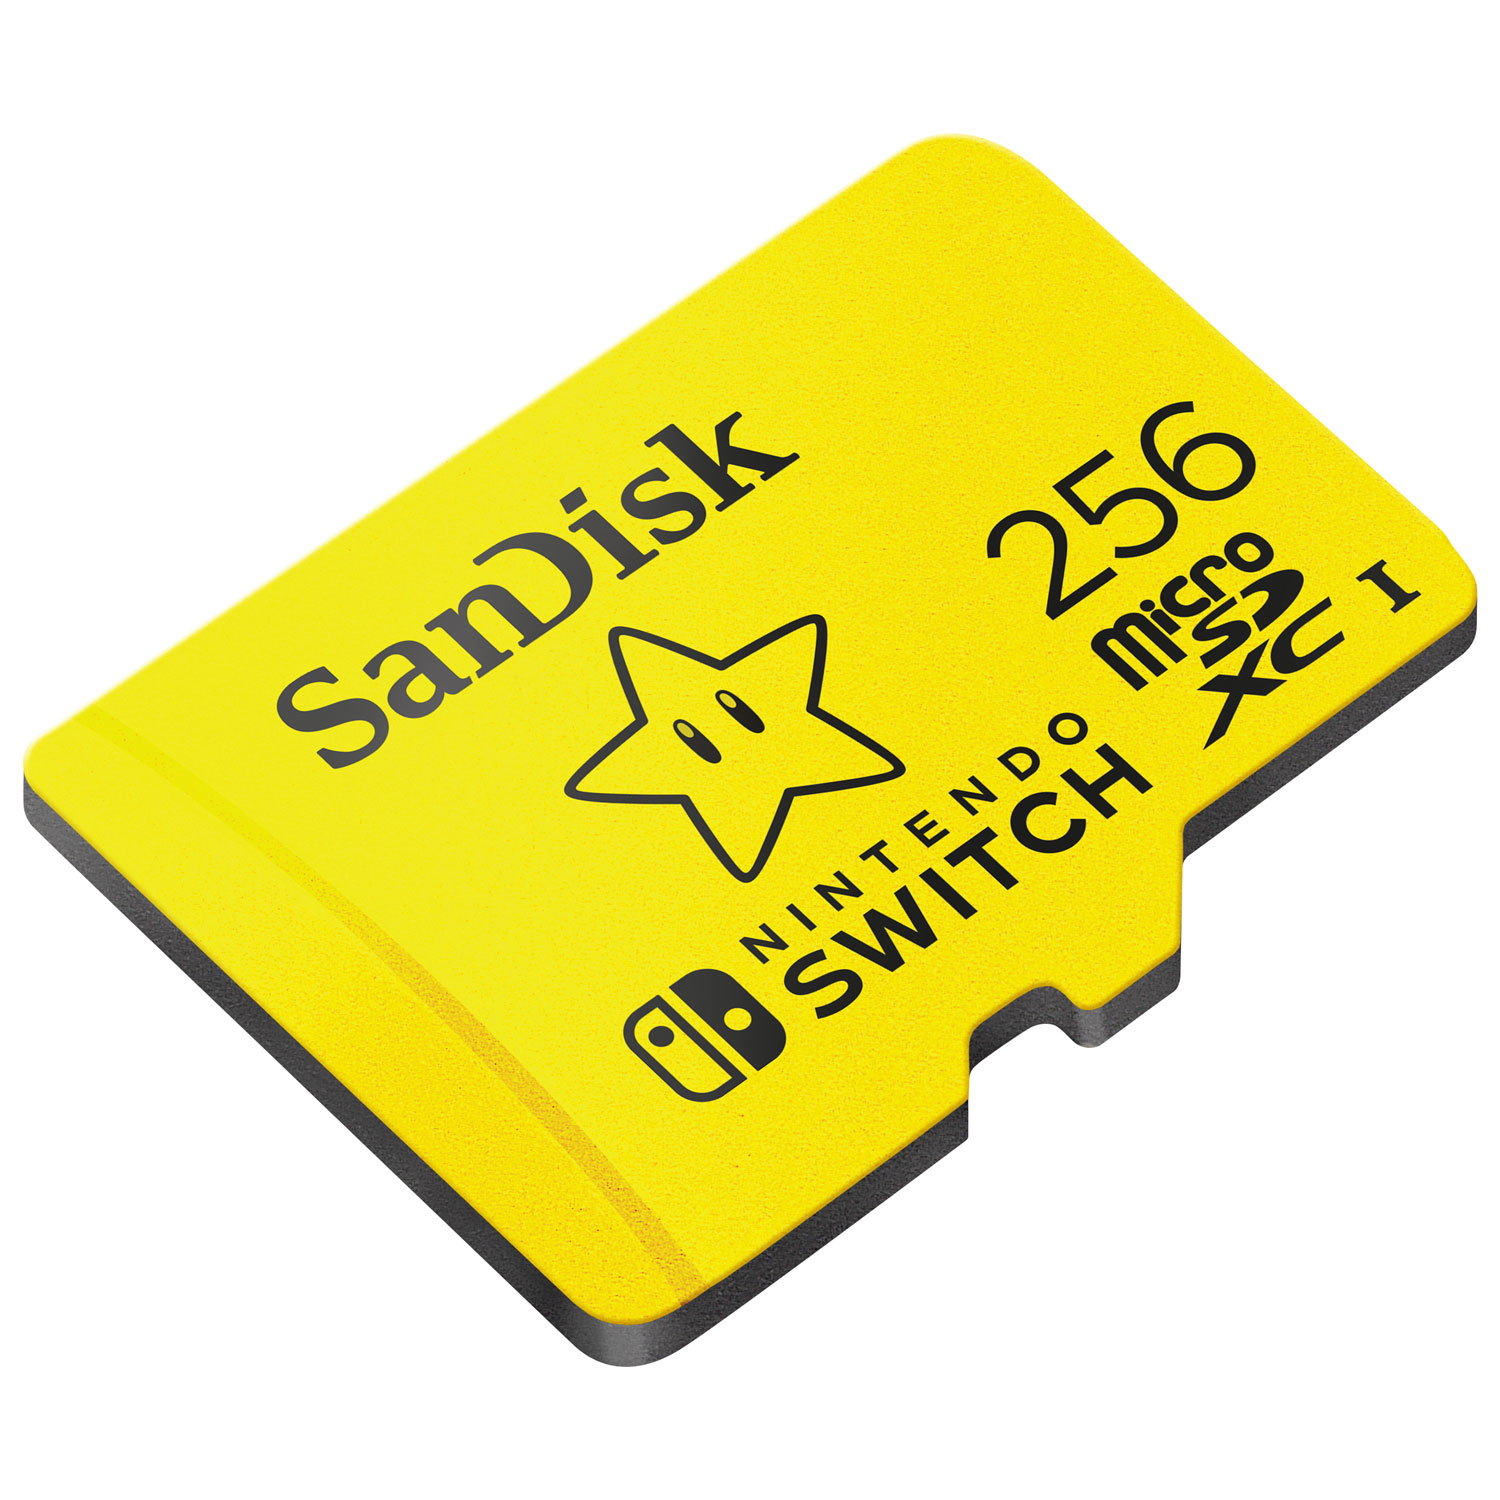 Soldes SanDisk Extreme microSDXC 256 Go (SDSQXAO-256G) 2024 au meilleur  prix sur